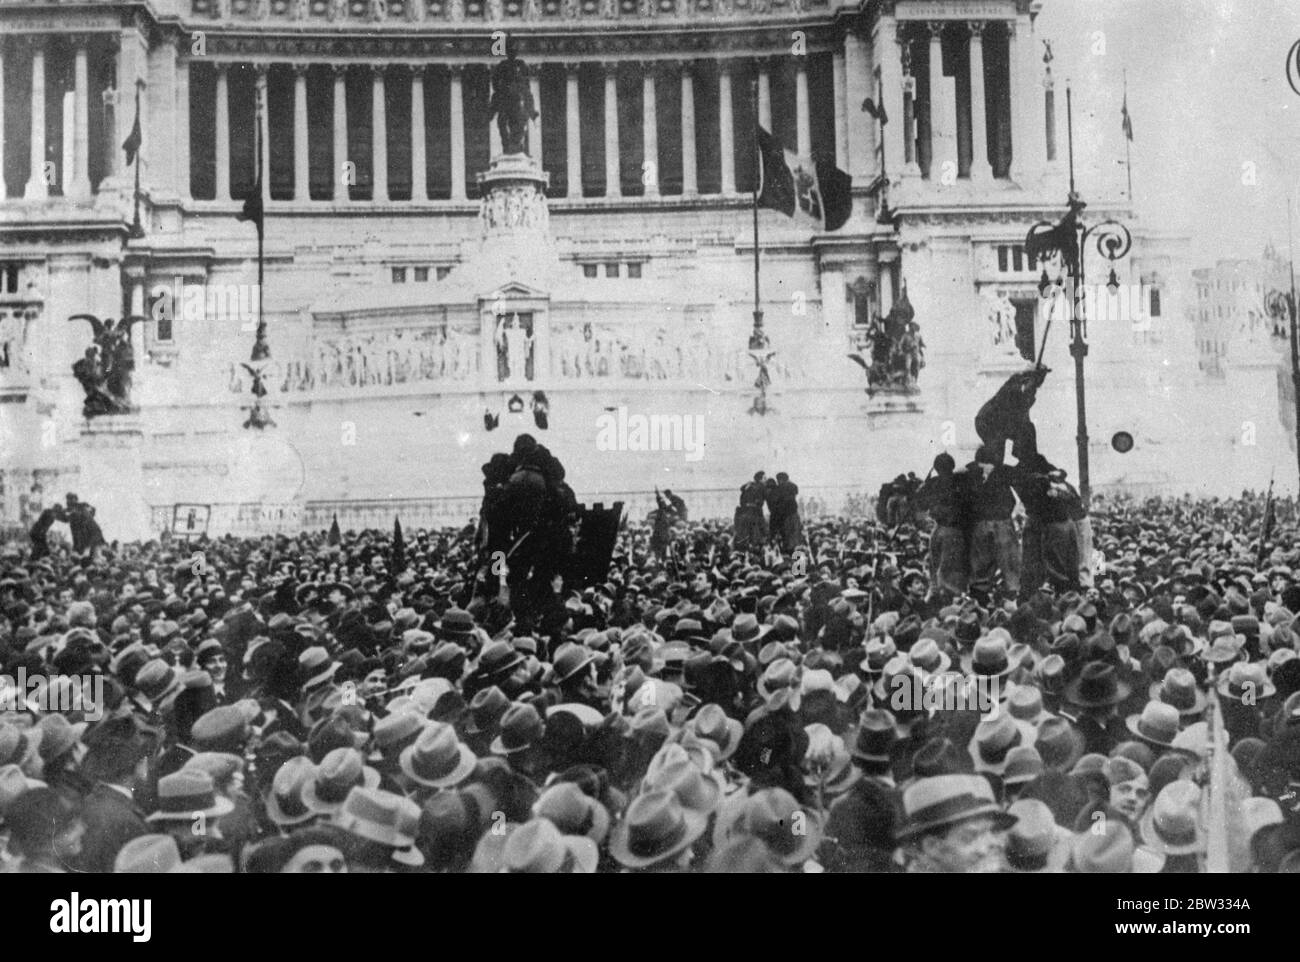 Schwarze Hemden feiern dreizehnten Jahrestag der Geburt des Faschismus . Tausende von Faschisten versammelten sich auf dem Venedig-Platz, in Rom, um den dreizehnten Jahrestag der Gründung der italienischen faschistischen Bewegung zu feiern. Ein Blick auf einen Teil der riesigen Menge von schwarzen Hemden, die Signor mussolini bei der Sitzung in Rom hören. 29 März 1932 Stockfoto